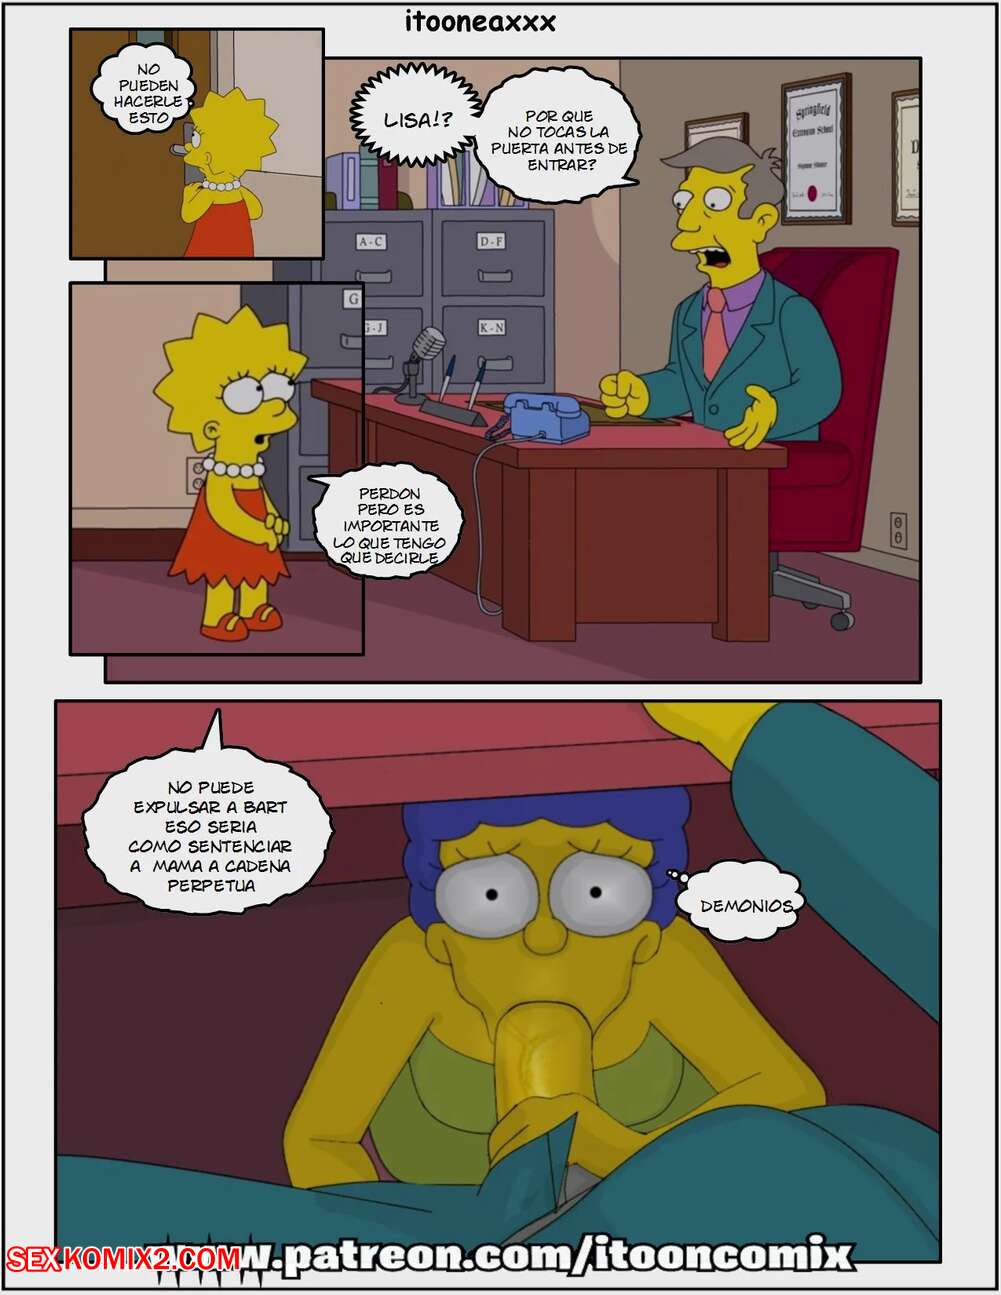 âœ…ï¸ Porn comic Simpsons Comics. IToonEAXXX. Chapter 7. Kicked Out 1 Sex  comic son was having | Porn comics in English for adults only |  sexkomix2.com